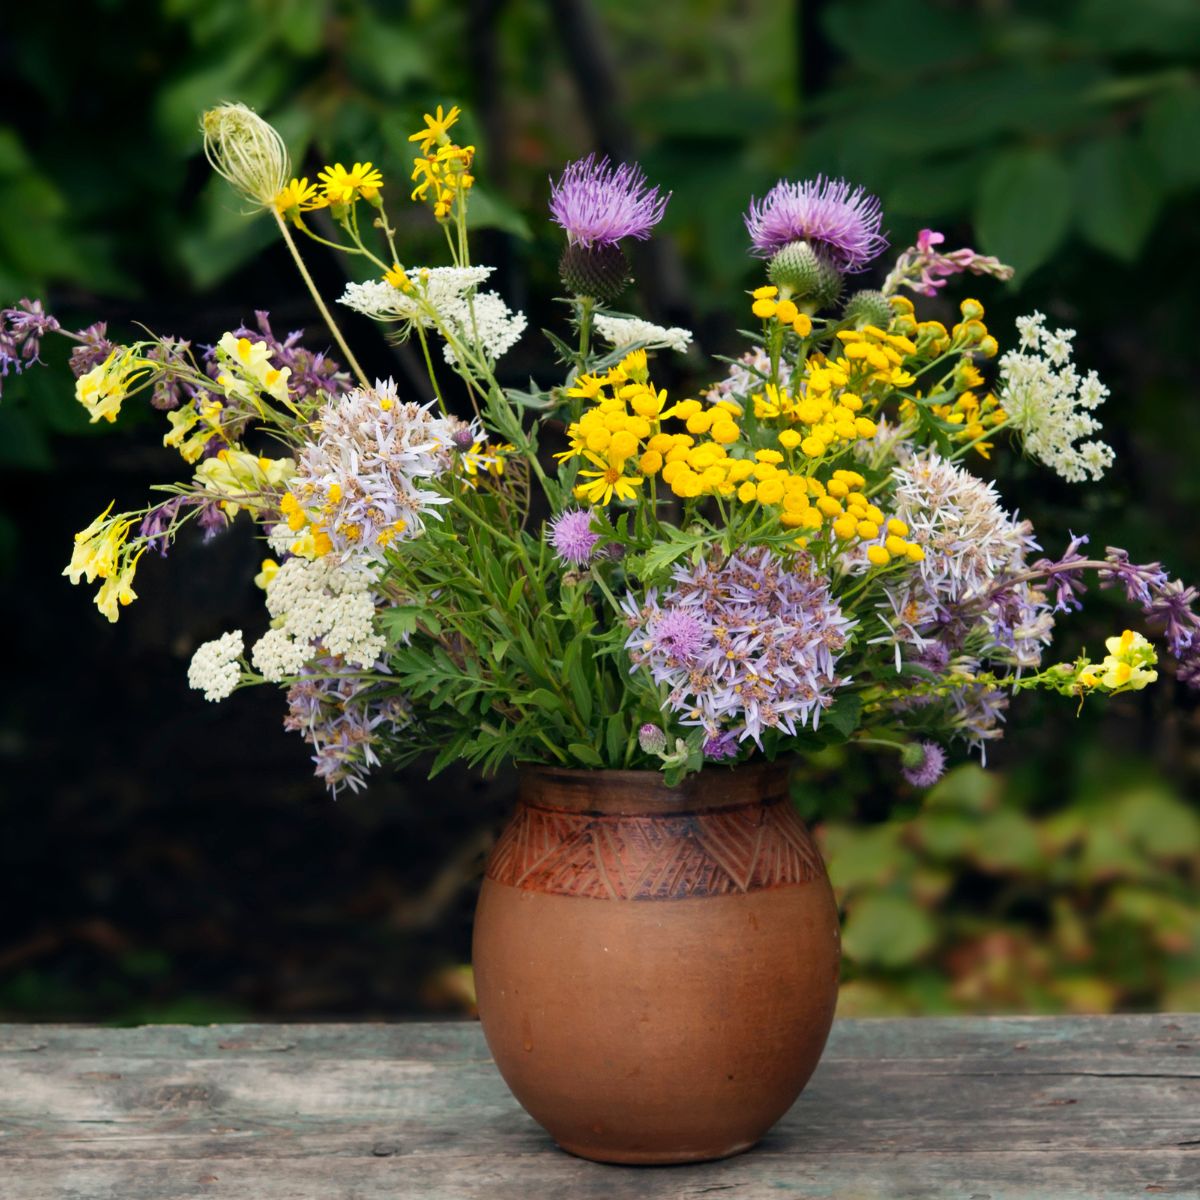 wildflower bouquet in a ceramic vase